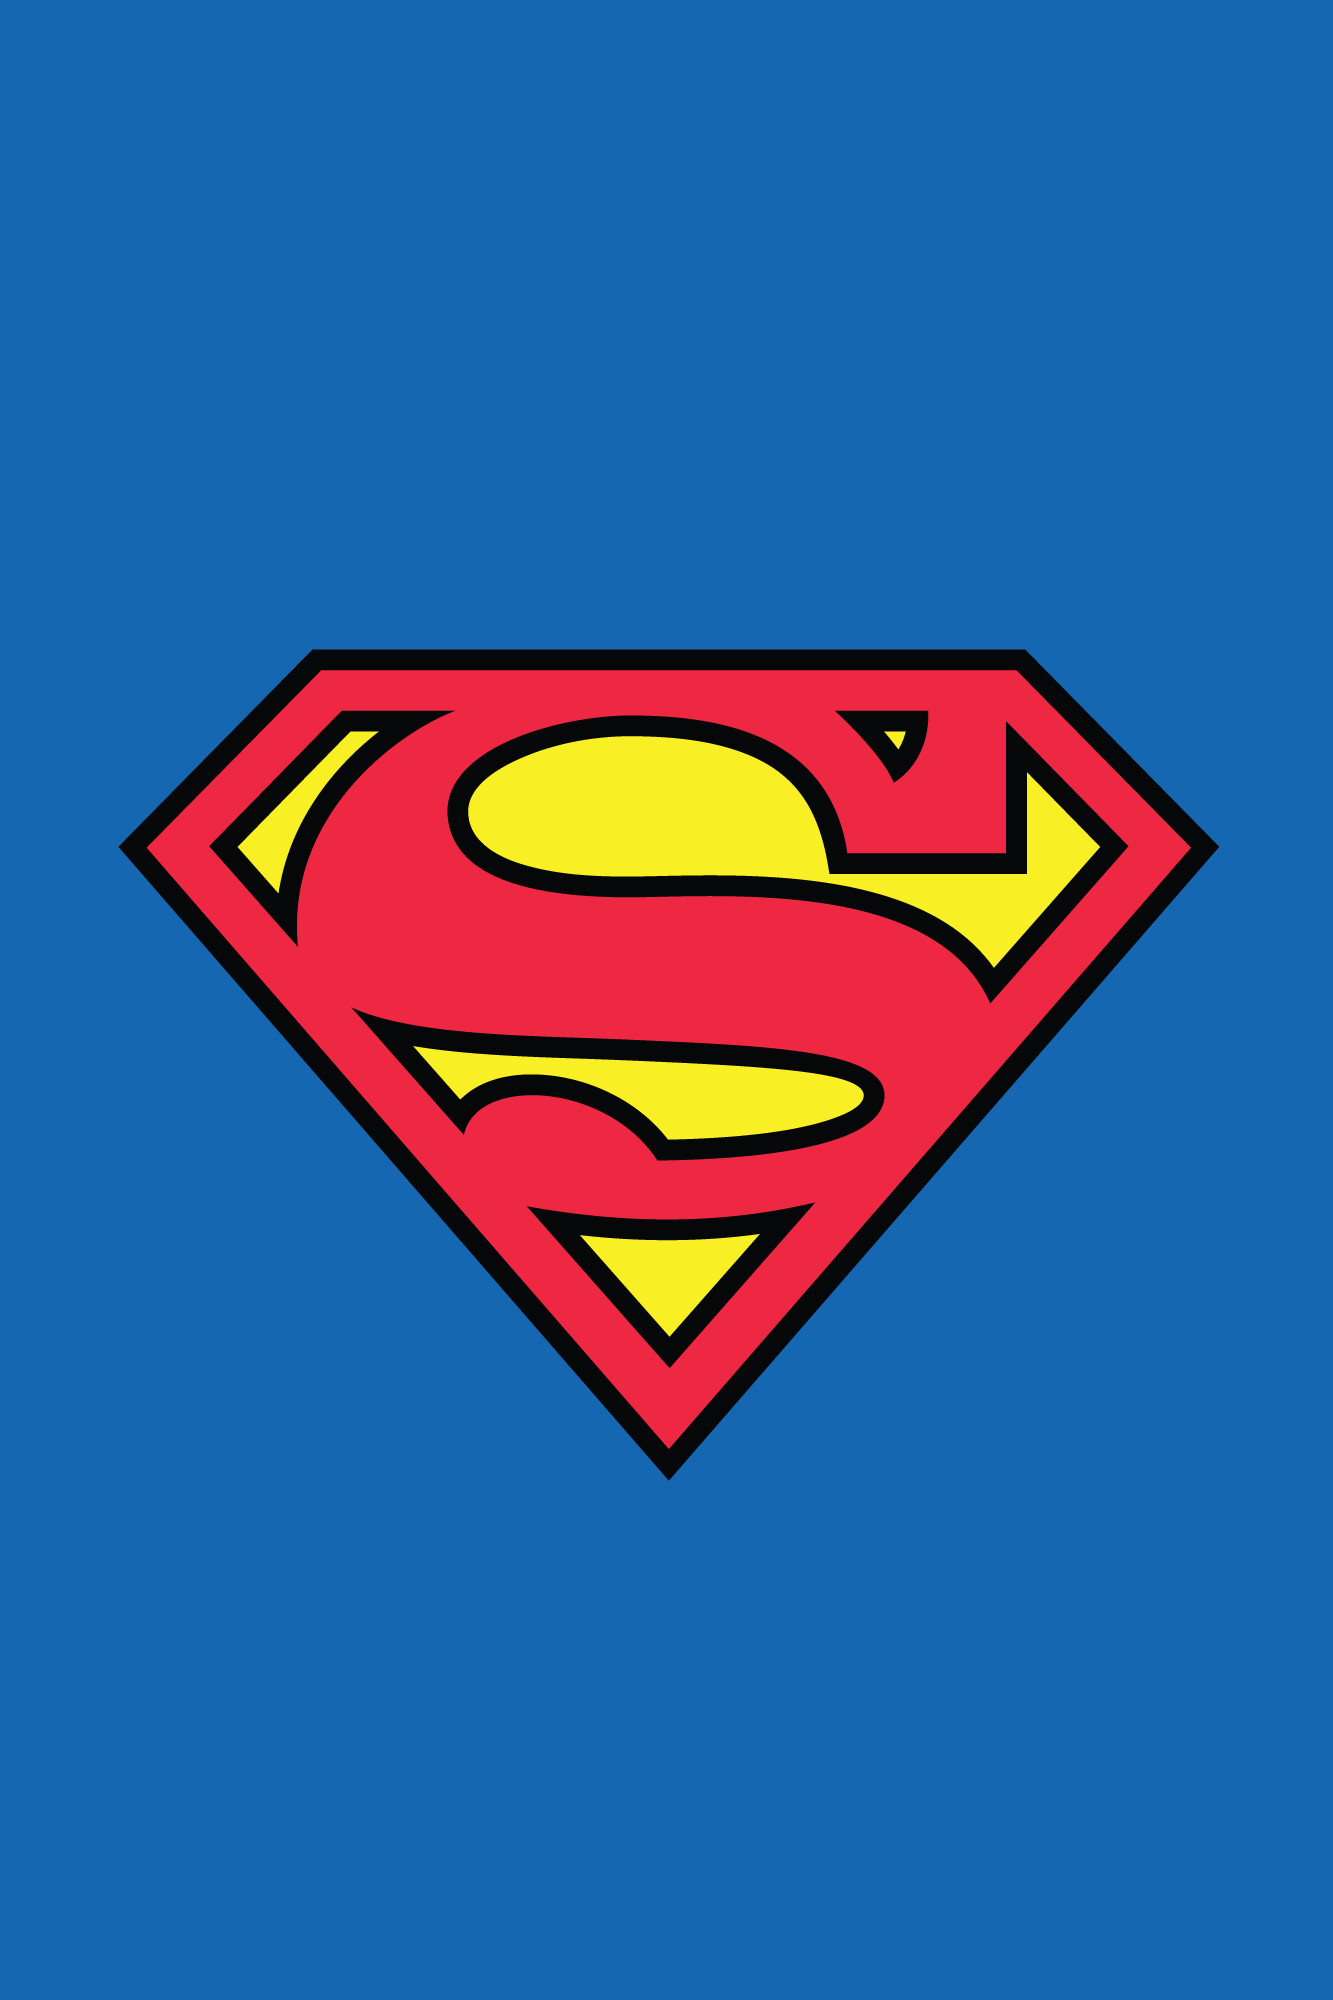 1333x2000 Os melhores wallpapers geeks para iPhone. Superman PosterSuperman  LogoSuperman ...